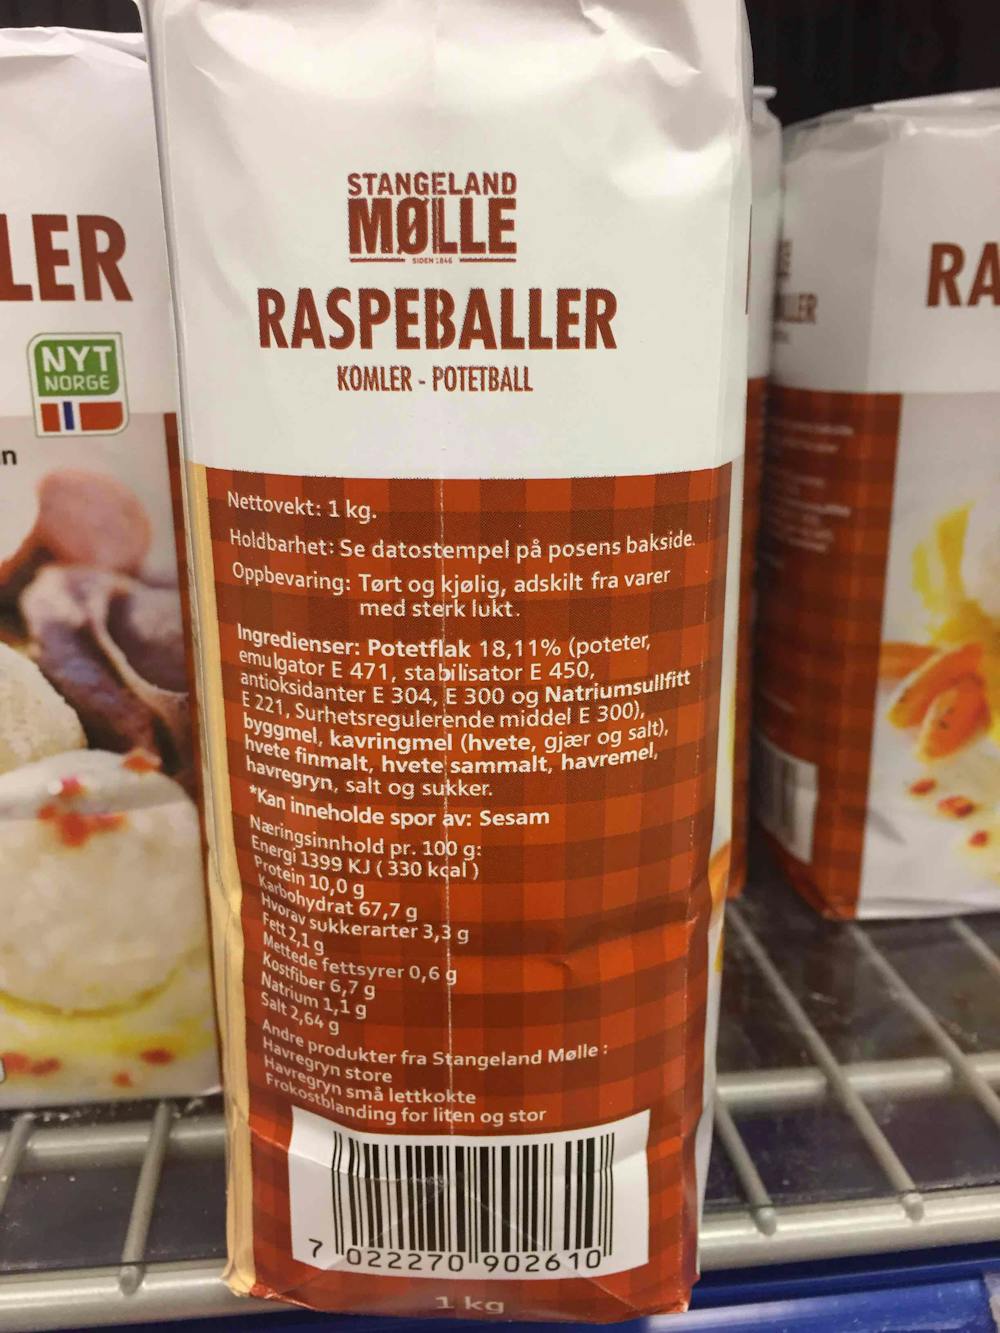 Ingredienslisten til Stangeland mølle Raspeballer